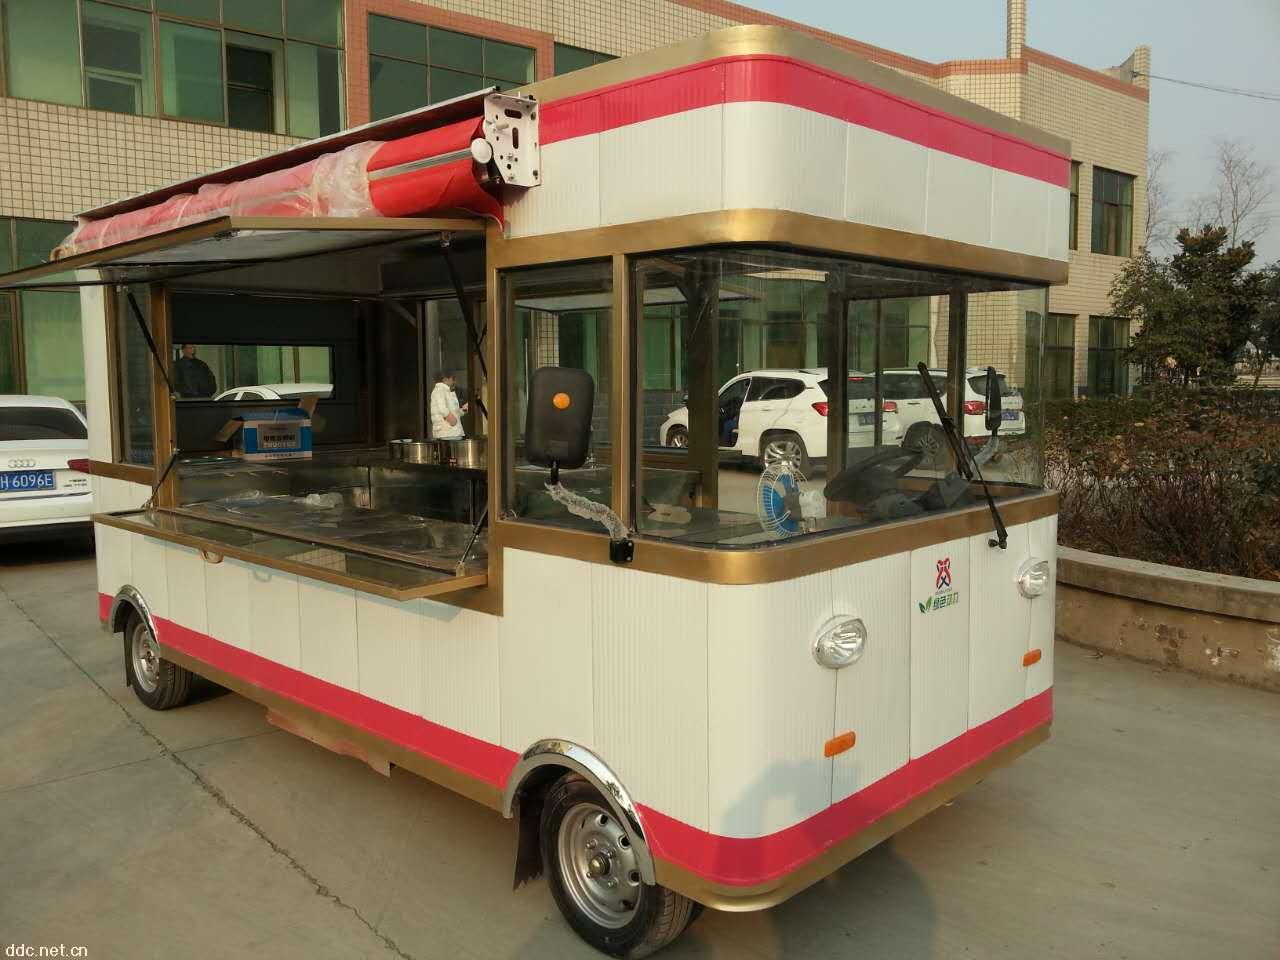 17新型时尚电动冰淇淋餐车 河南欧时利电动科技有限公司